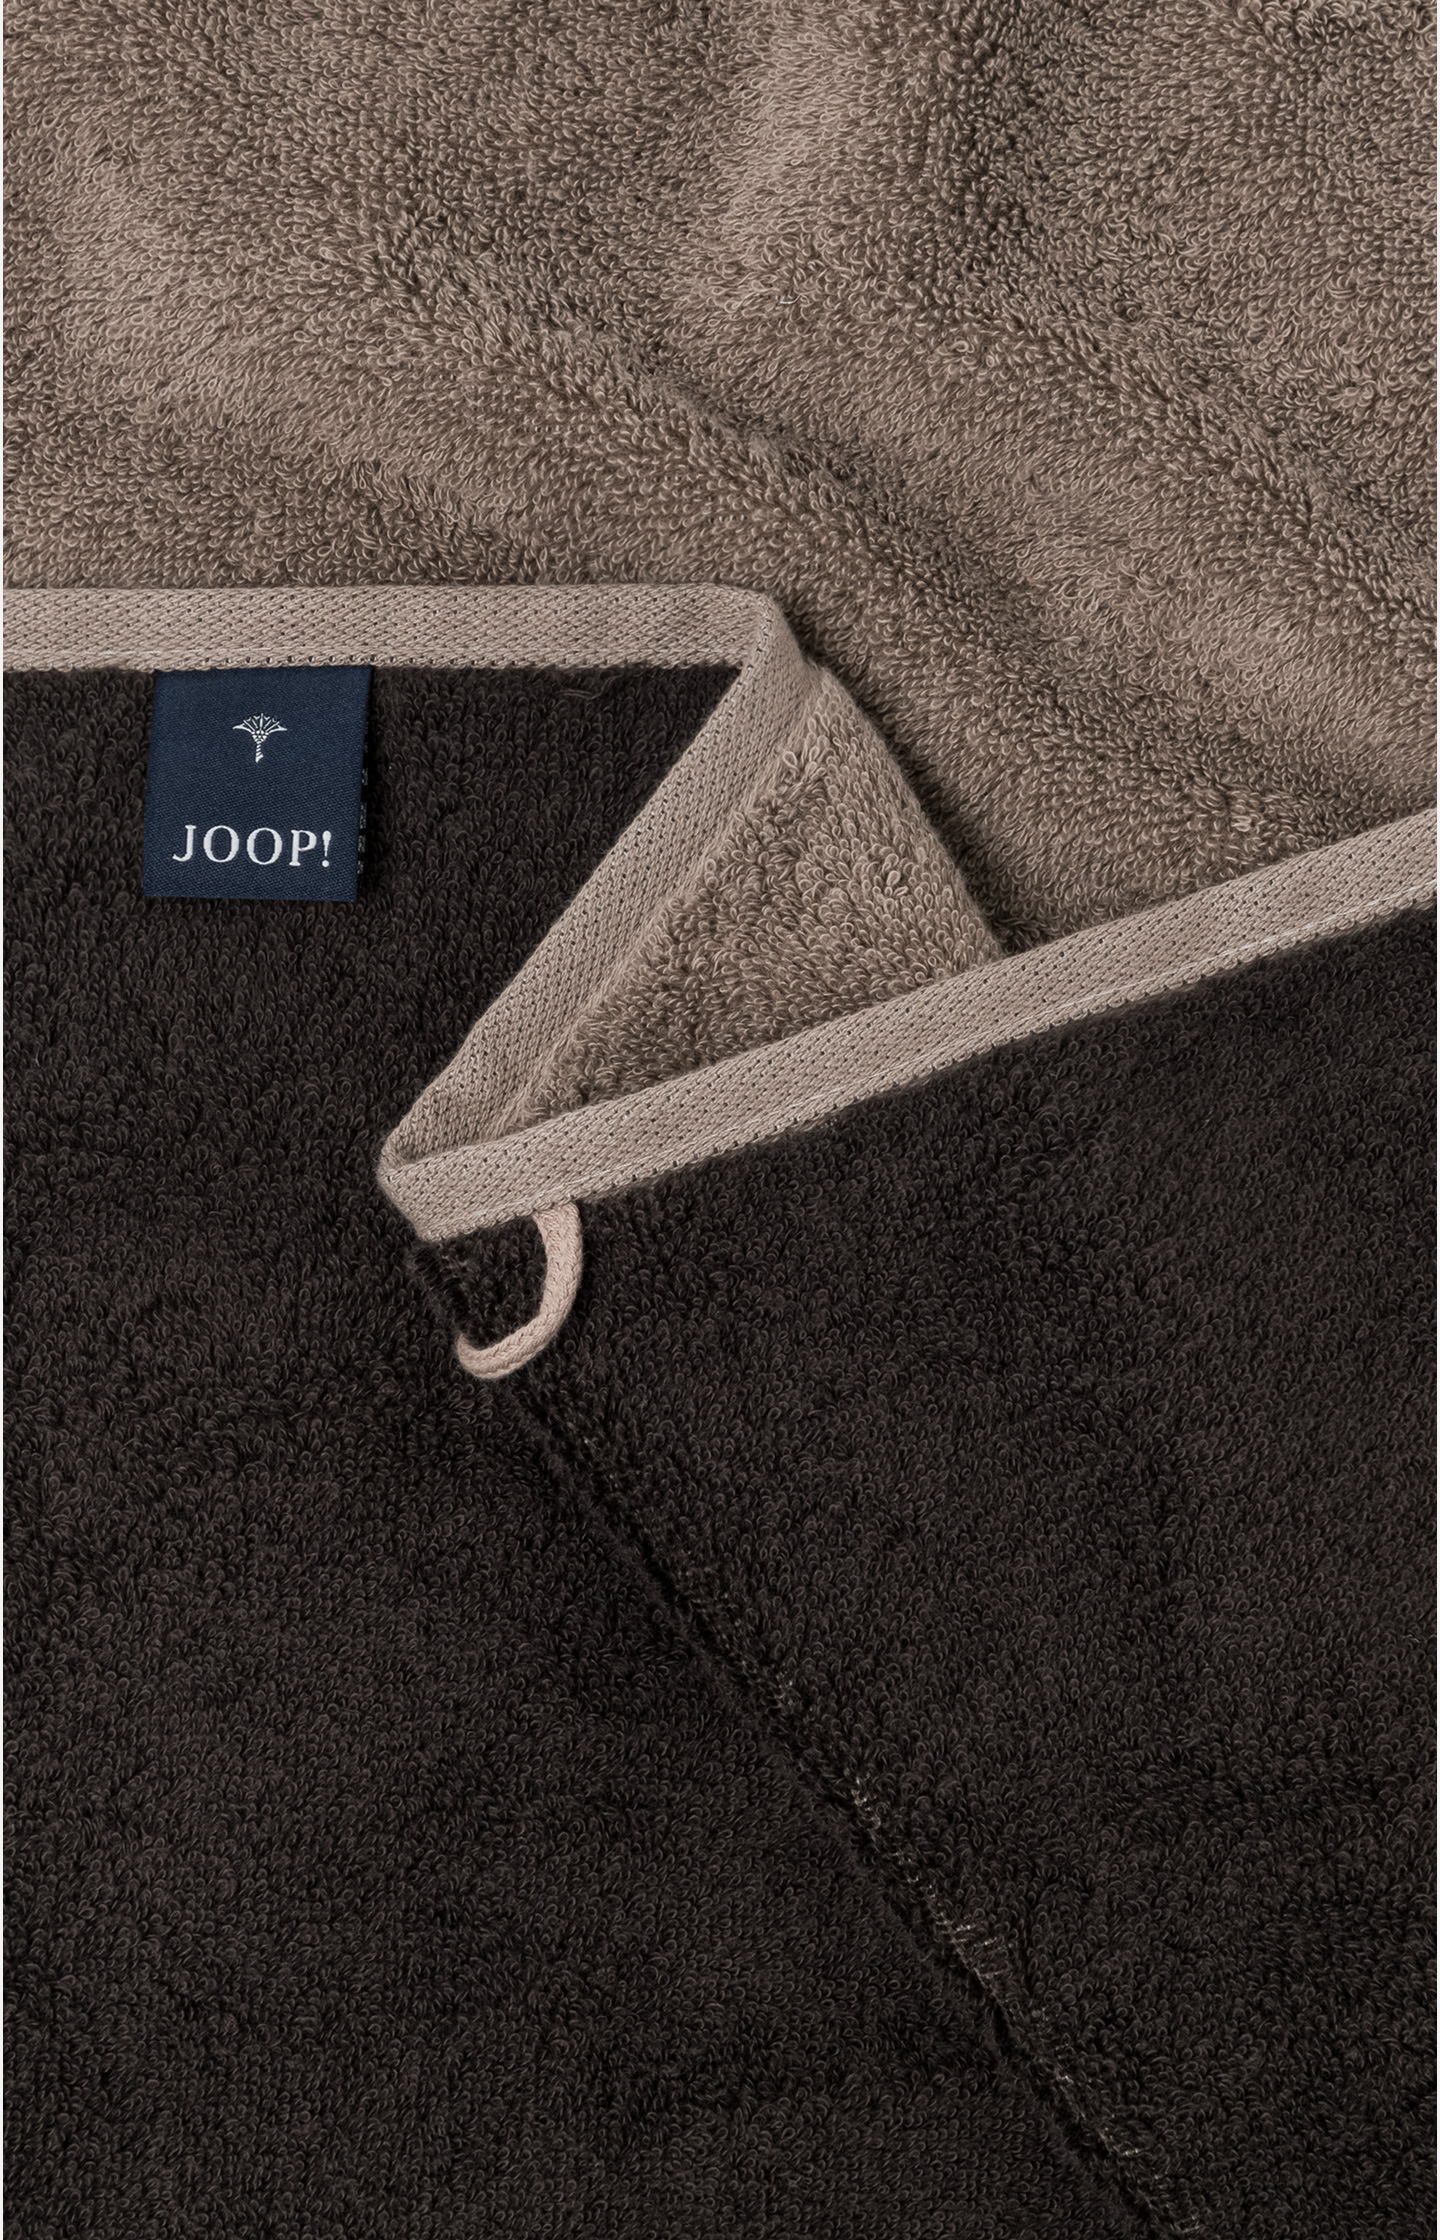 Handtuch JOOP! CLASSIC DOUBLEFACE in Mocca, 50 x 100 cm - im JOOP!  Online-Shop